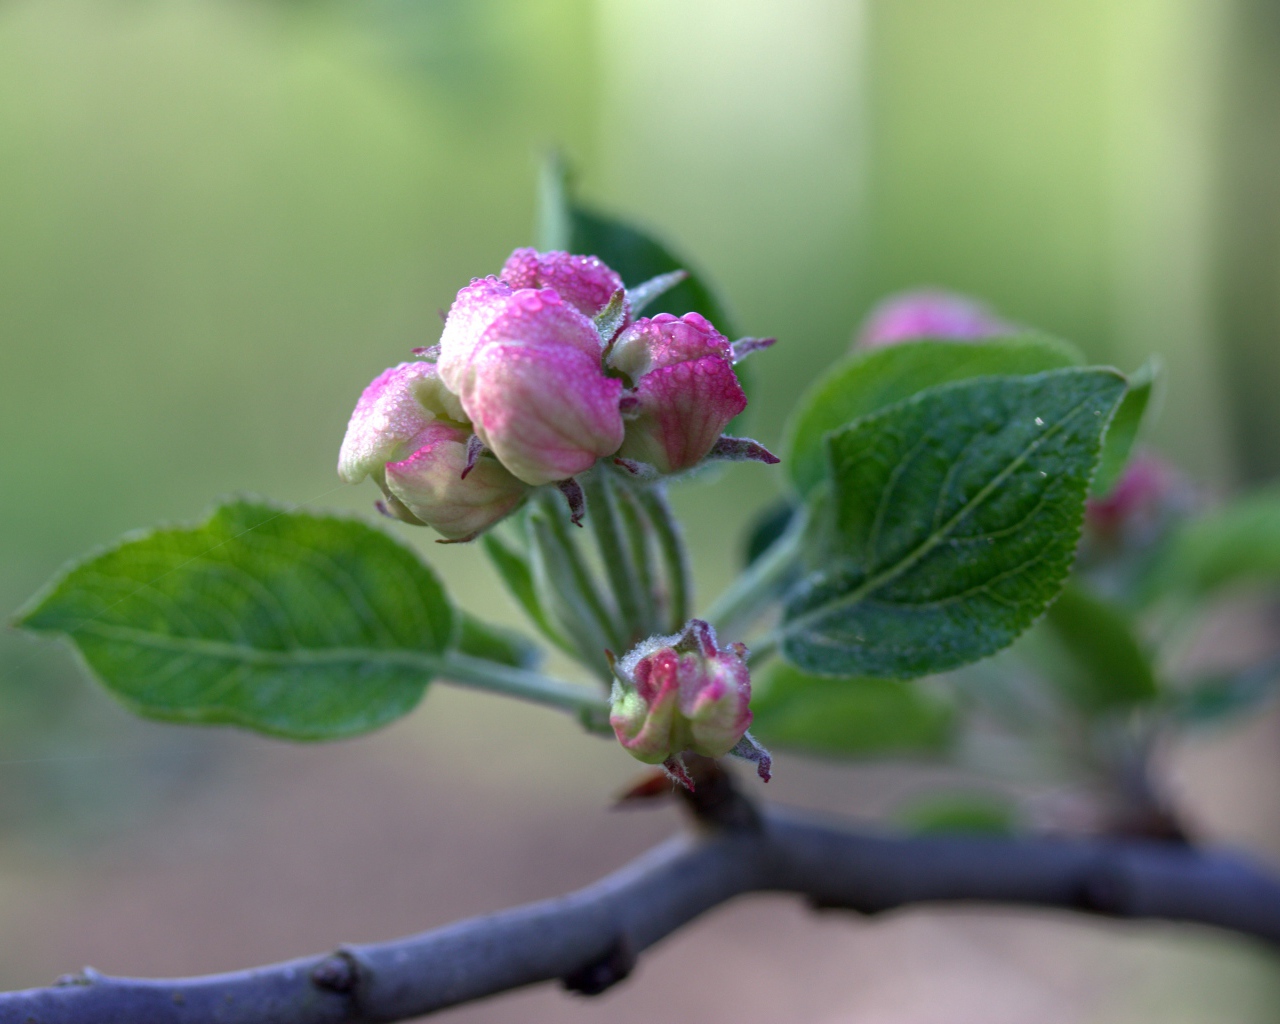 Розовый цветок распускается на ветке яблони 